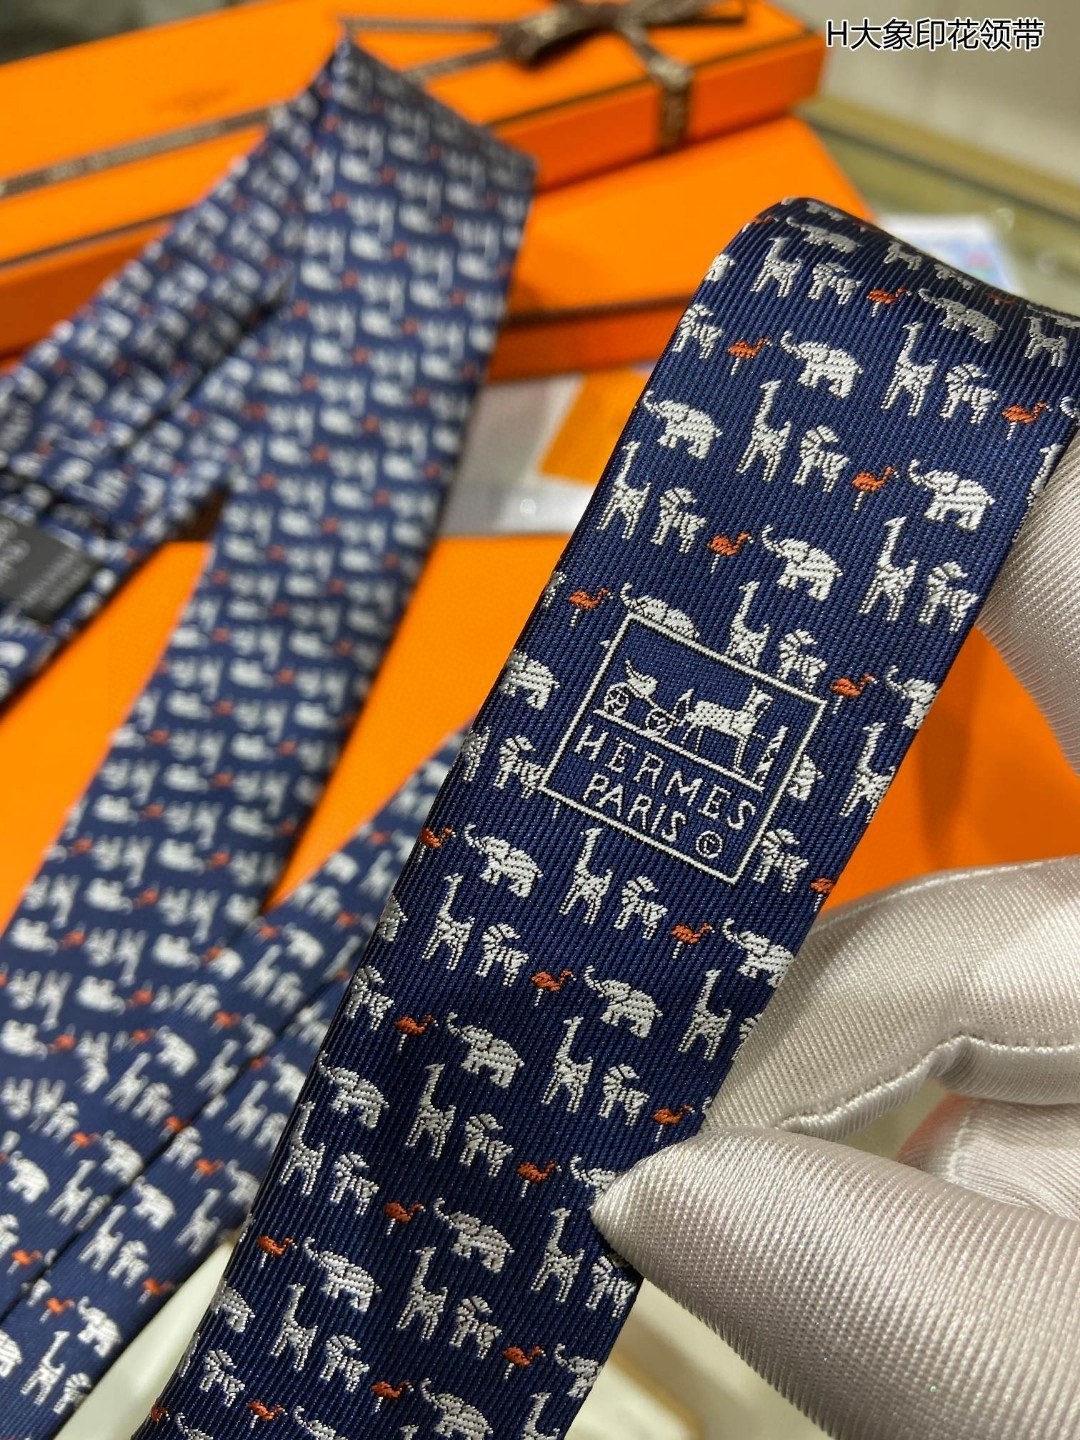 男士新款领带系列H大象印花领带稀有H